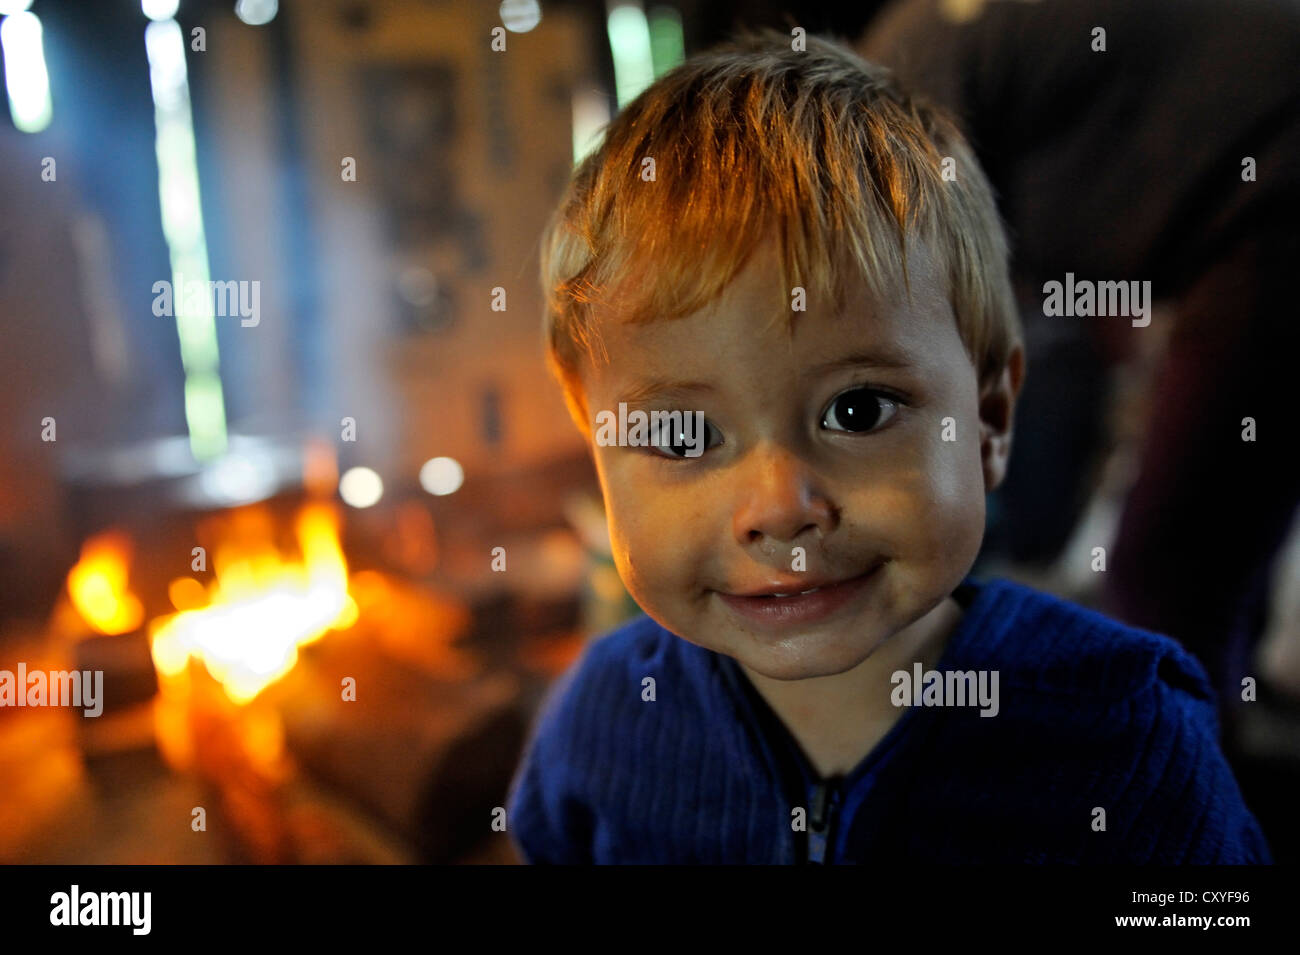 Garçon en face d'un feu ouvert dans une cuisine traditionnelle, portrait, Comunidad Martillo, Caaguazu, Paraguay, Amérique du Sud Banque D'Images